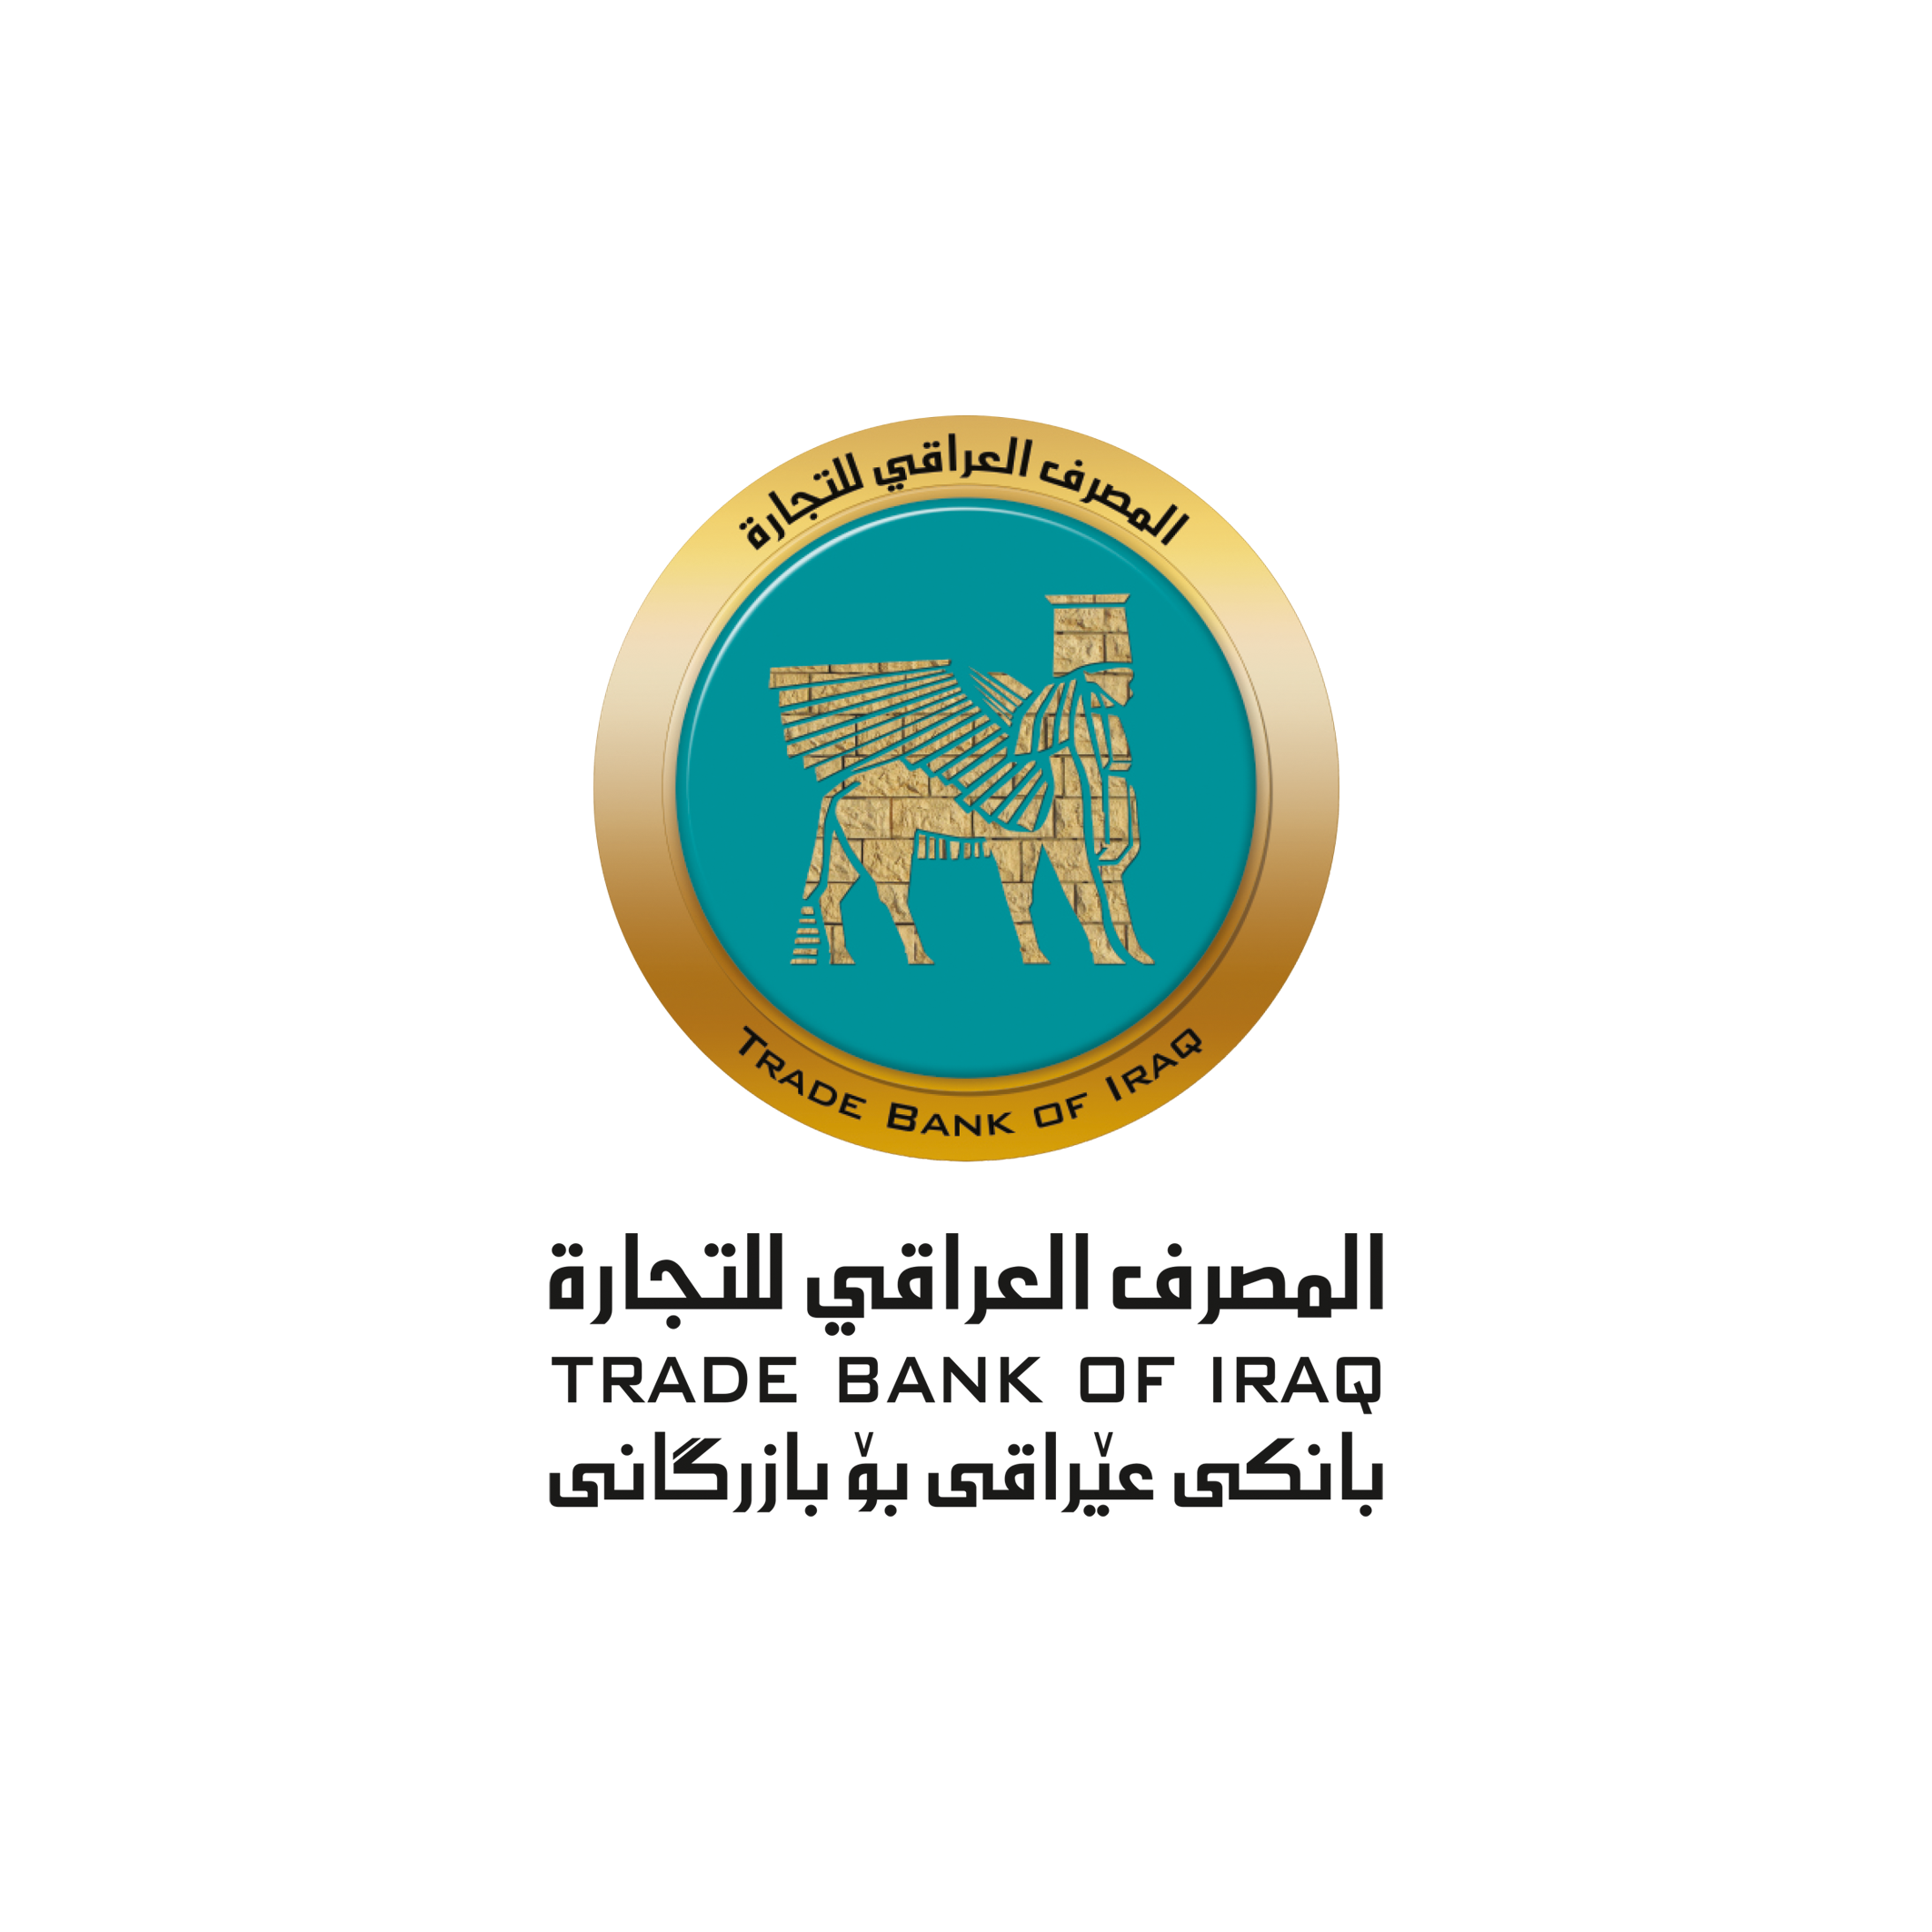 المصرف العراقي للتجارة يشارك في عملية توطين رواتب موظفي إقليم كوردستان العراق